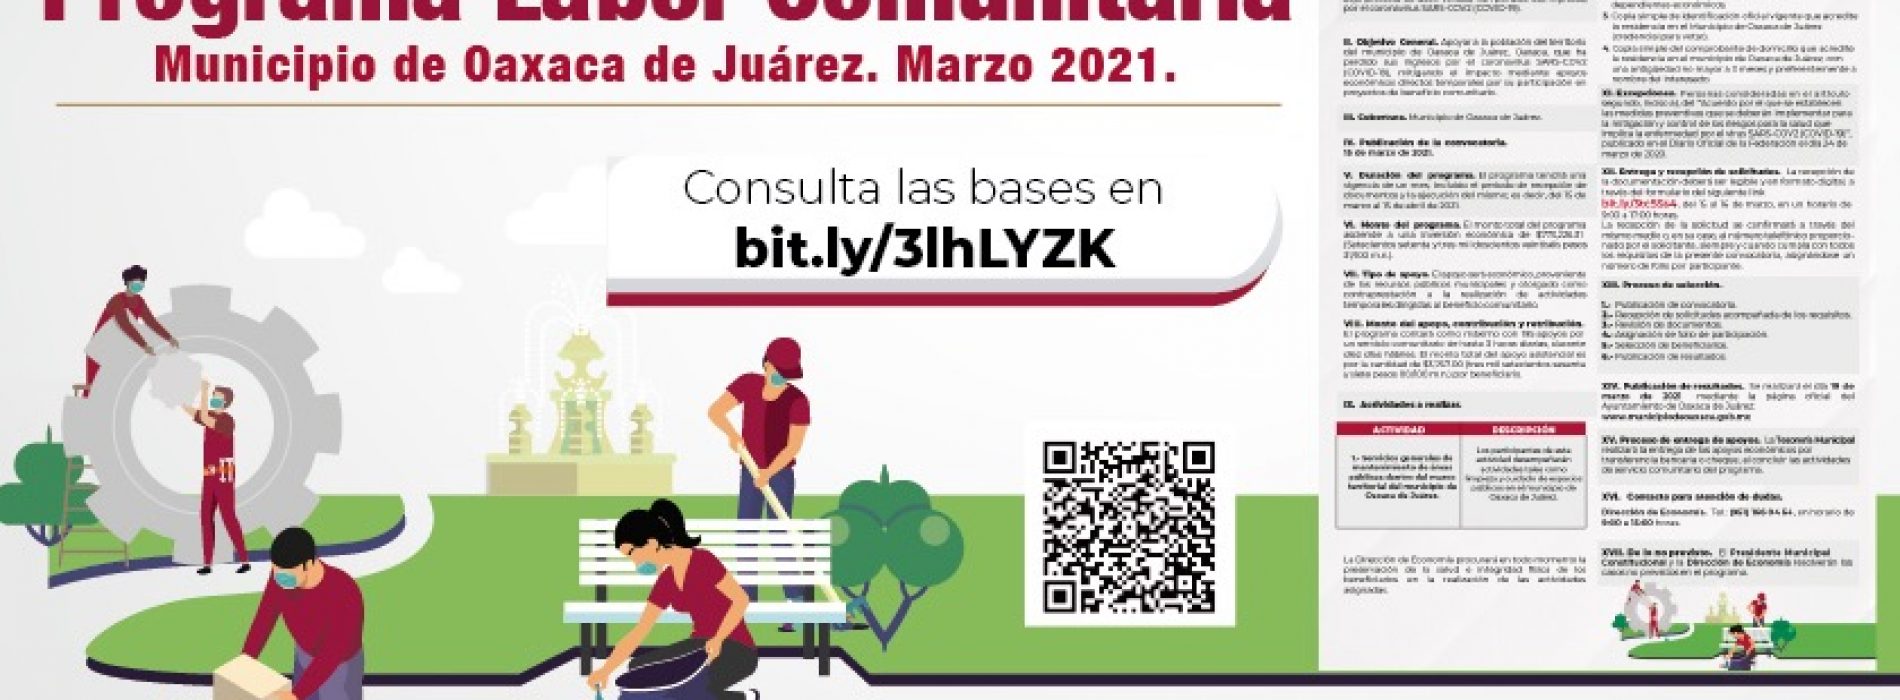 Participa en la tercera etapa del programa Labor Comunitaria del Ayuntamiento de Oaxaca